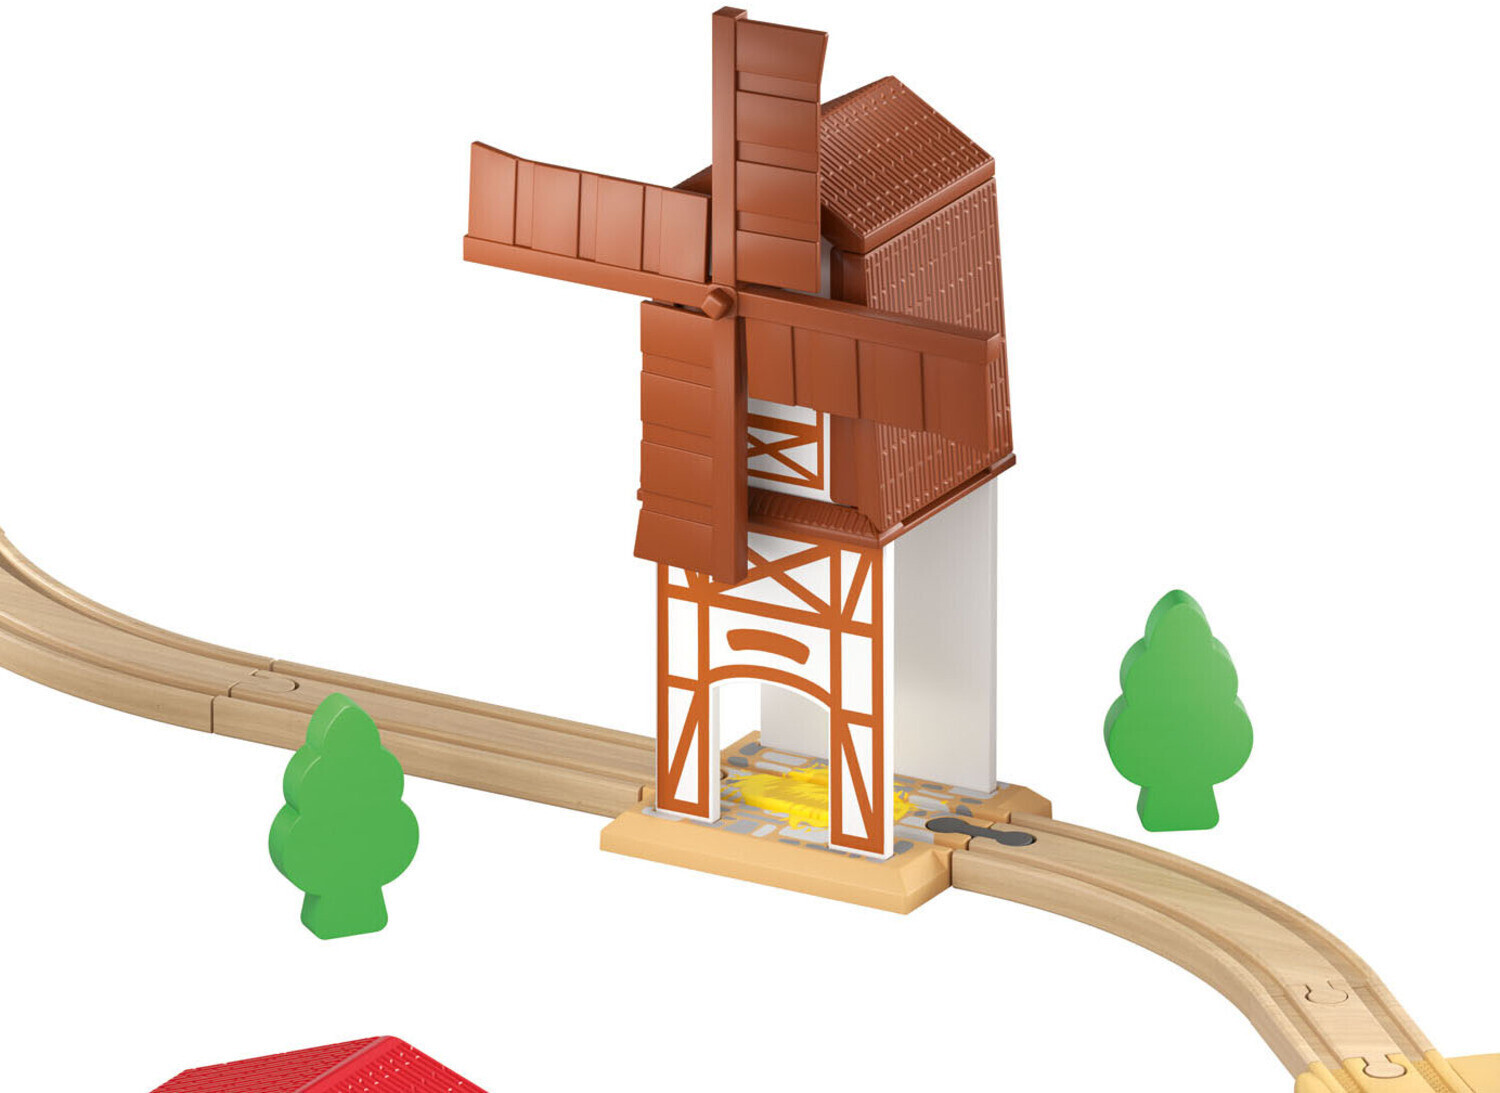 Eisenbahn-Set Preisvergleich | Playtive ab Bauernhof 29,99 € bei